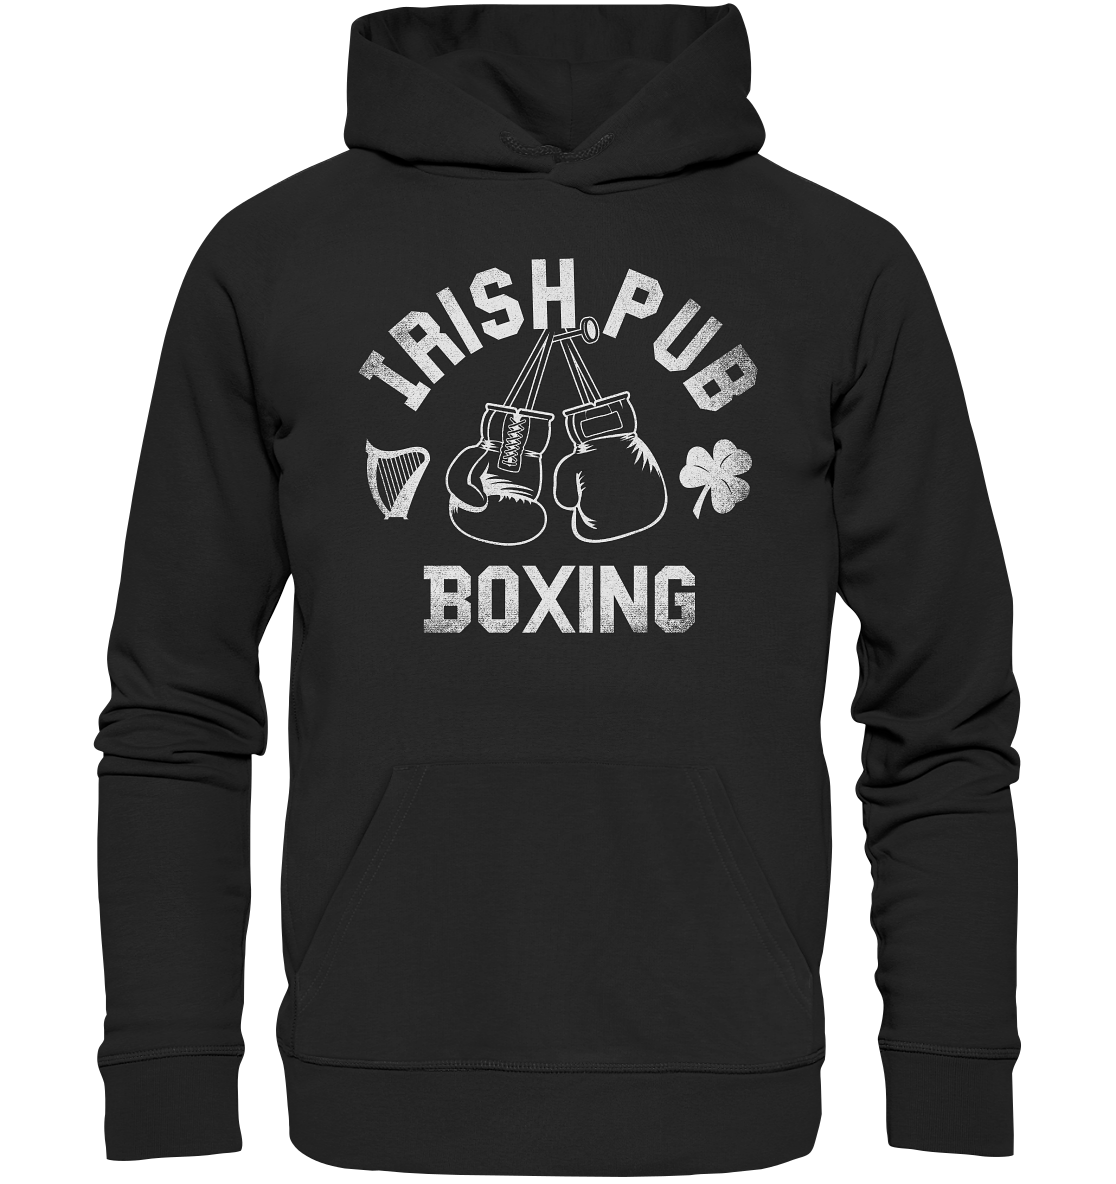 "Irish Pub Boxing" - Premium Unisex Hoodie